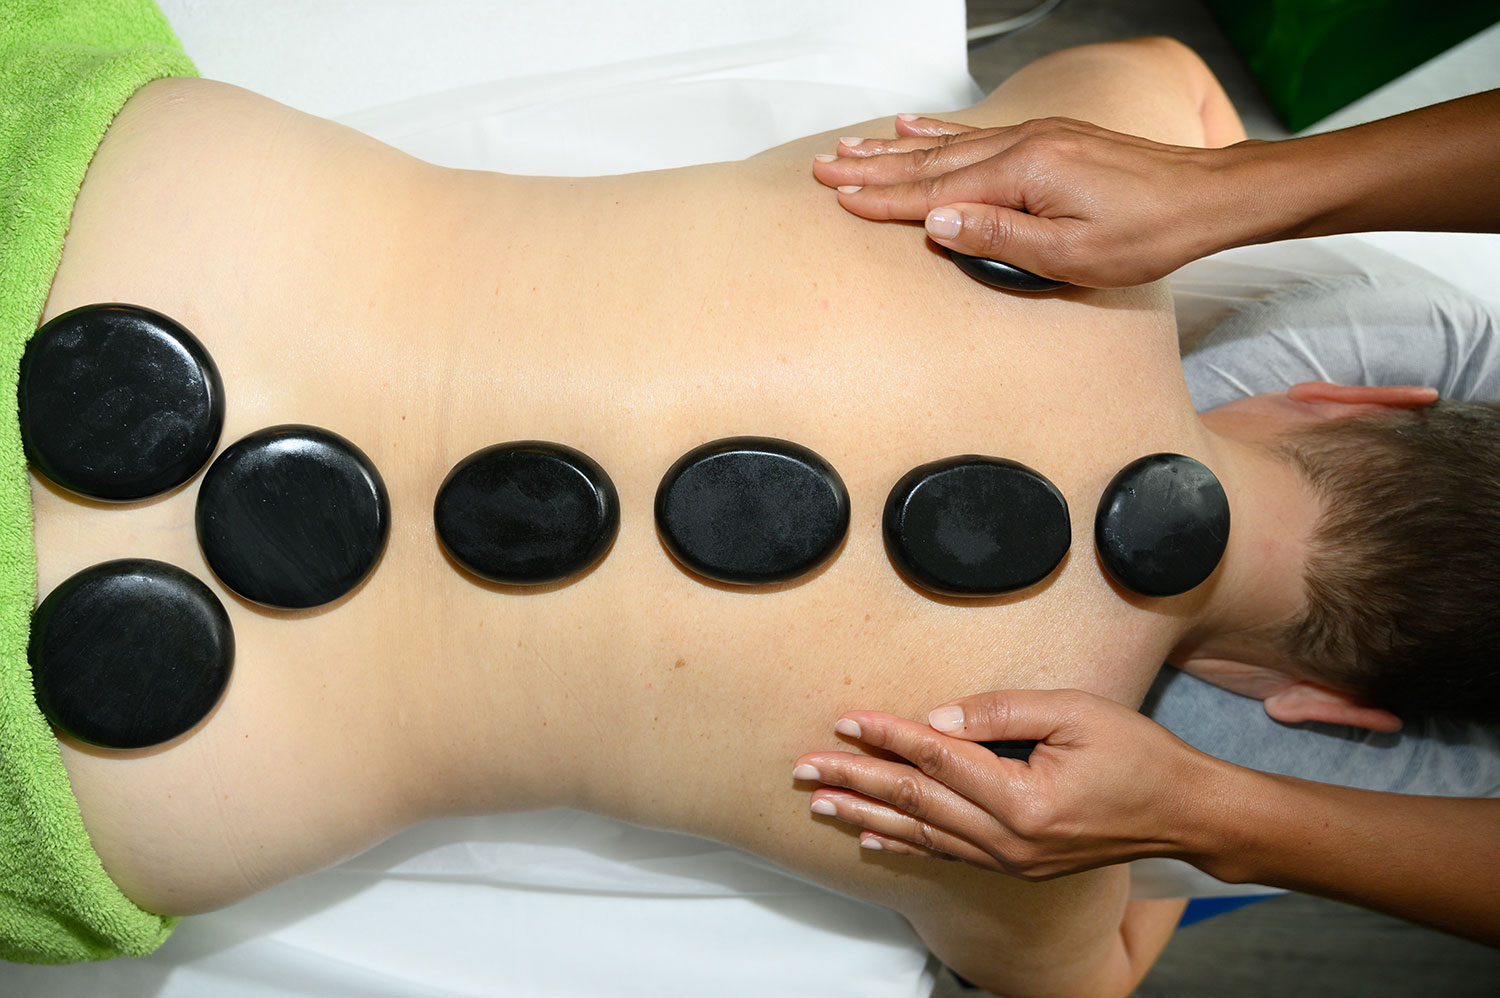 Hot Stone Massage gegen Verspannungen und Stress im Alltag